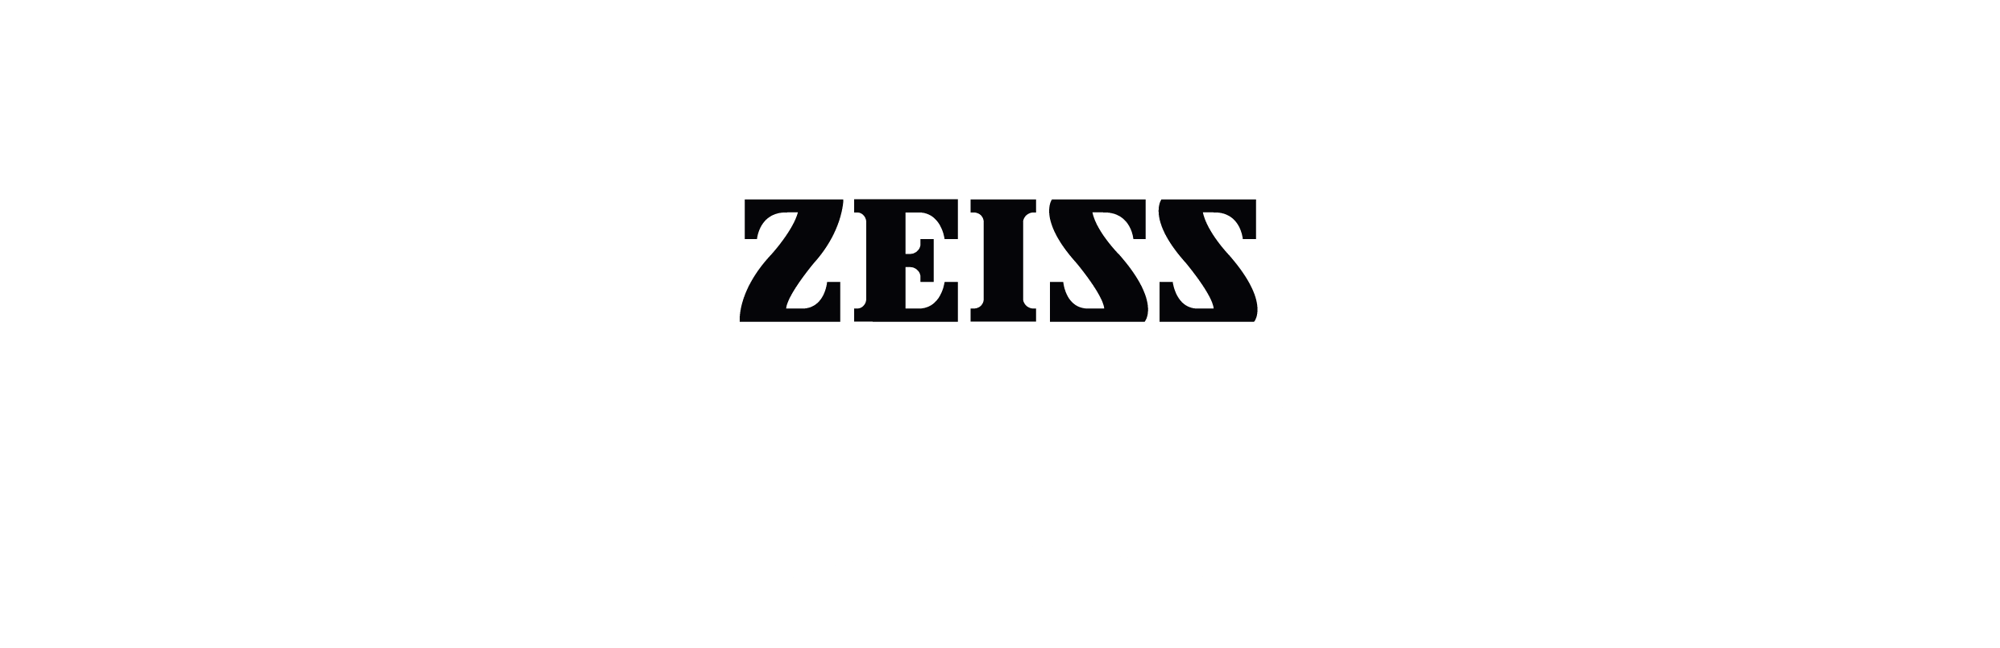 ZEISS_Weißgrau